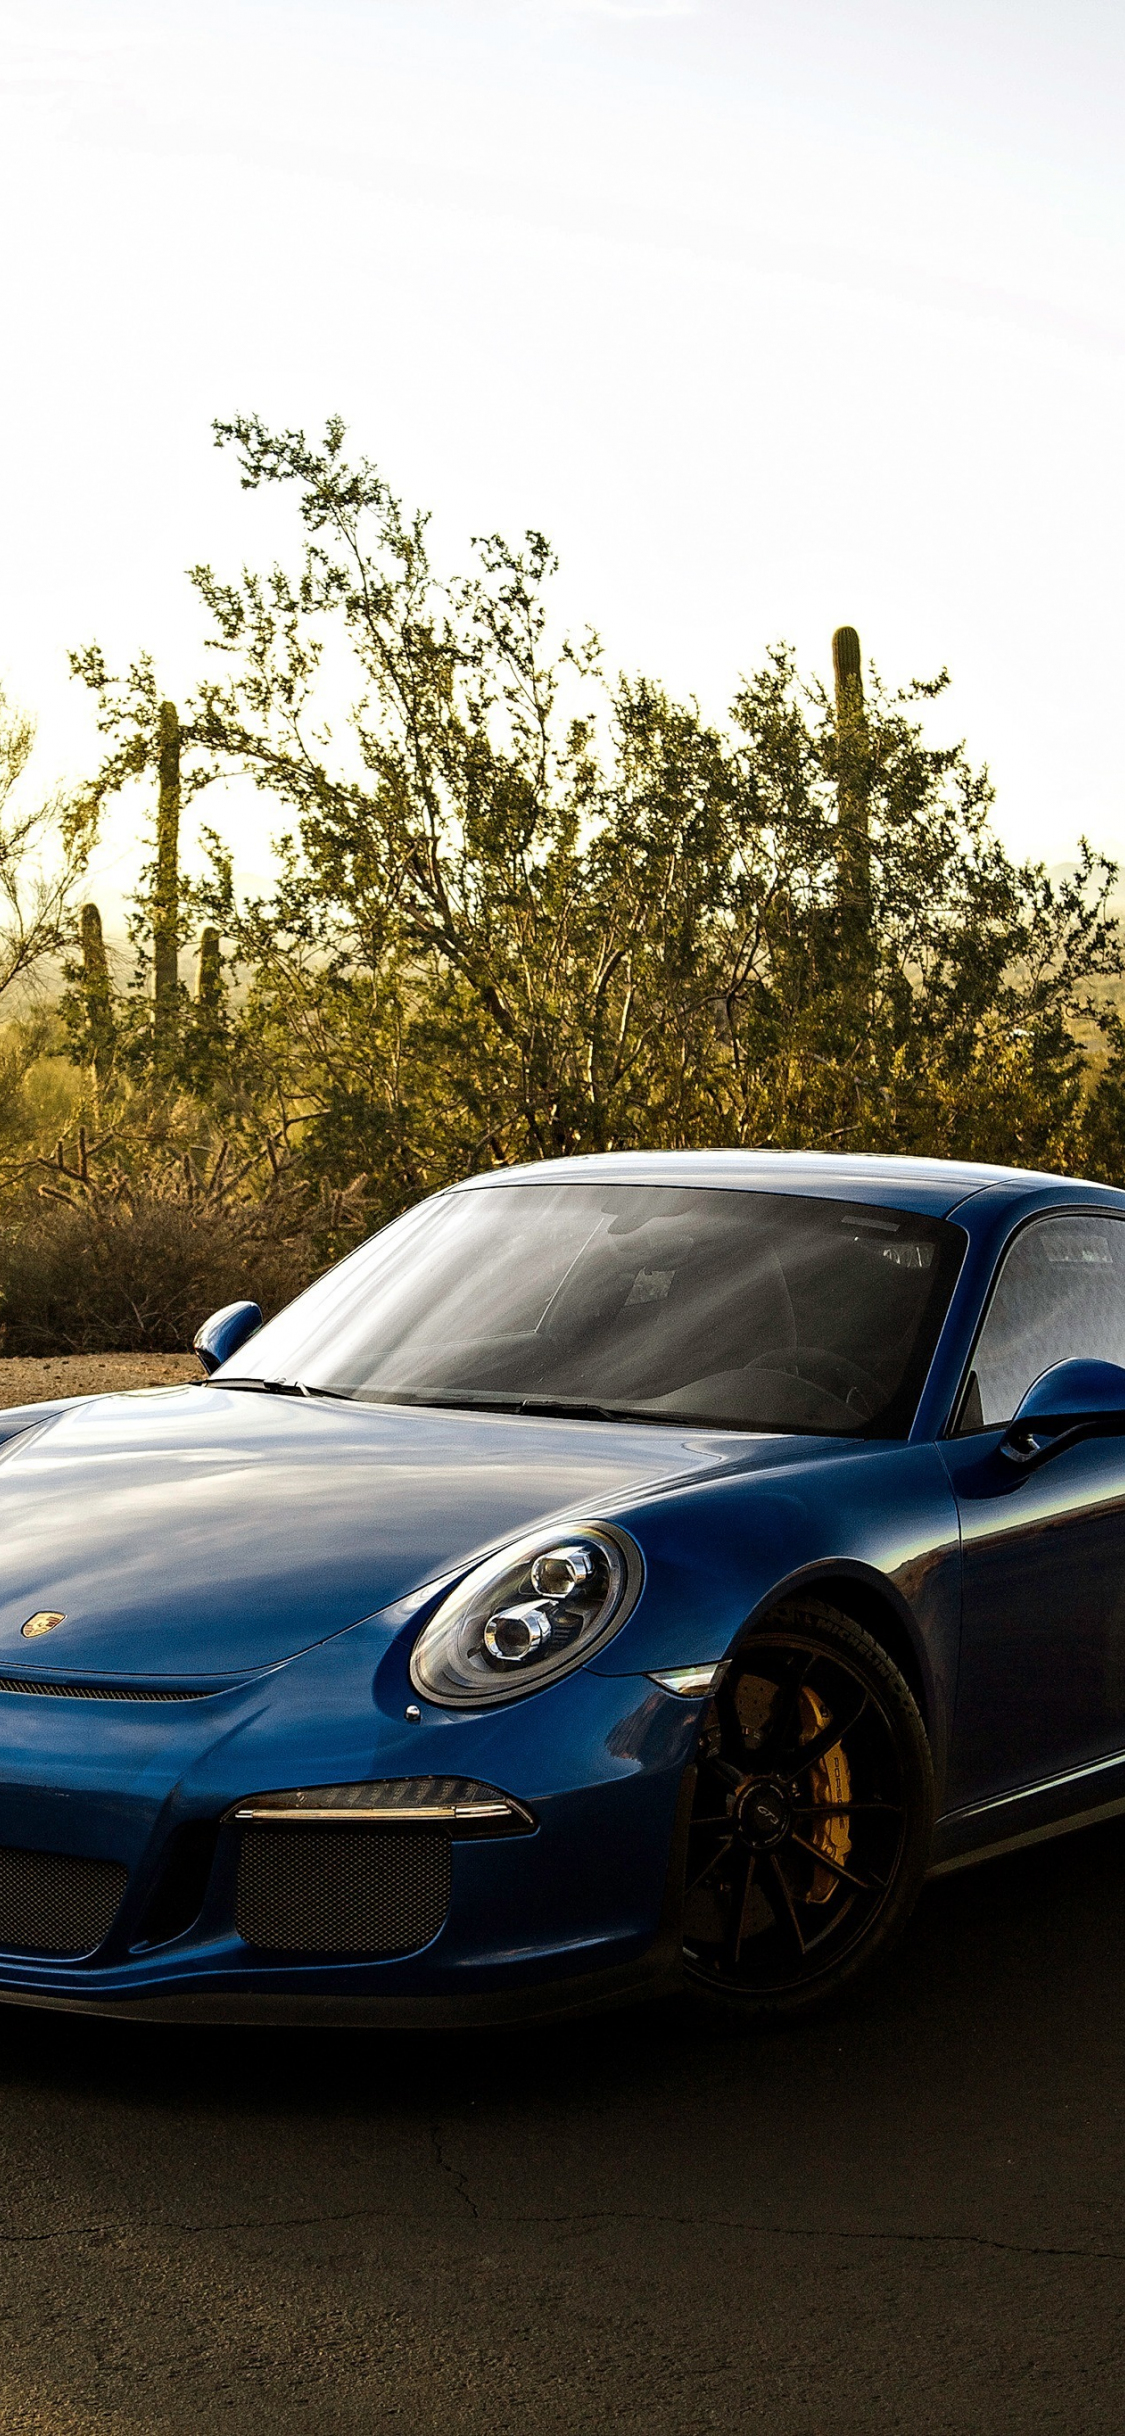 Download 1125x2436 Wallpaper Blue Car Sports Porsche 911 Gt3 Rs